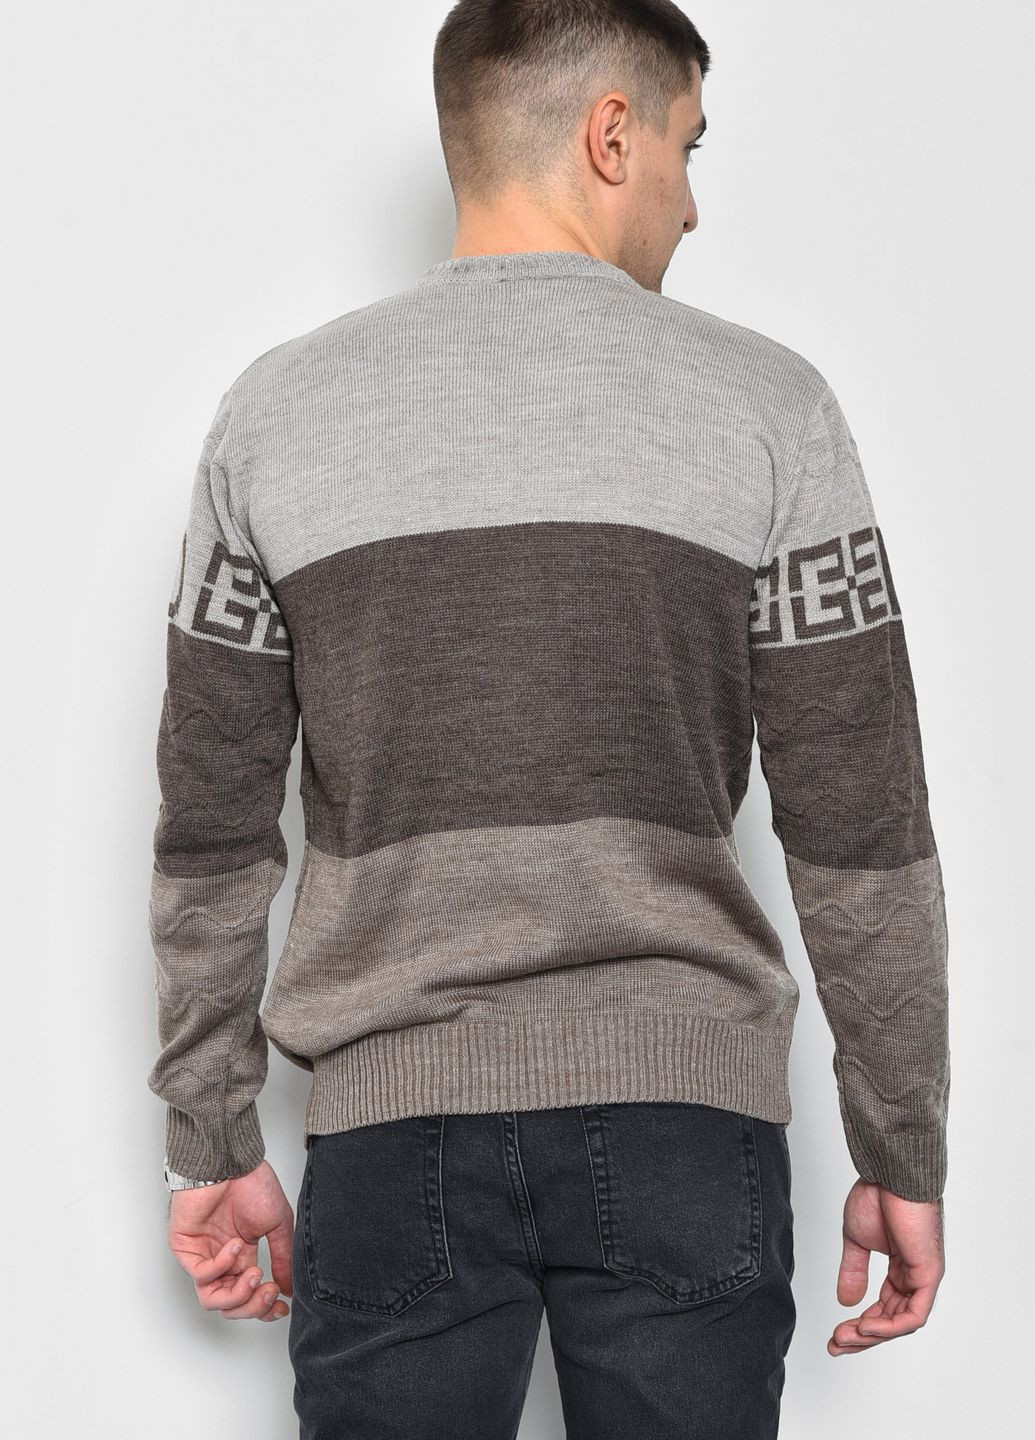 Коричневый демисезонный свитер мужской коричневого цвета пуловер Let's Shop